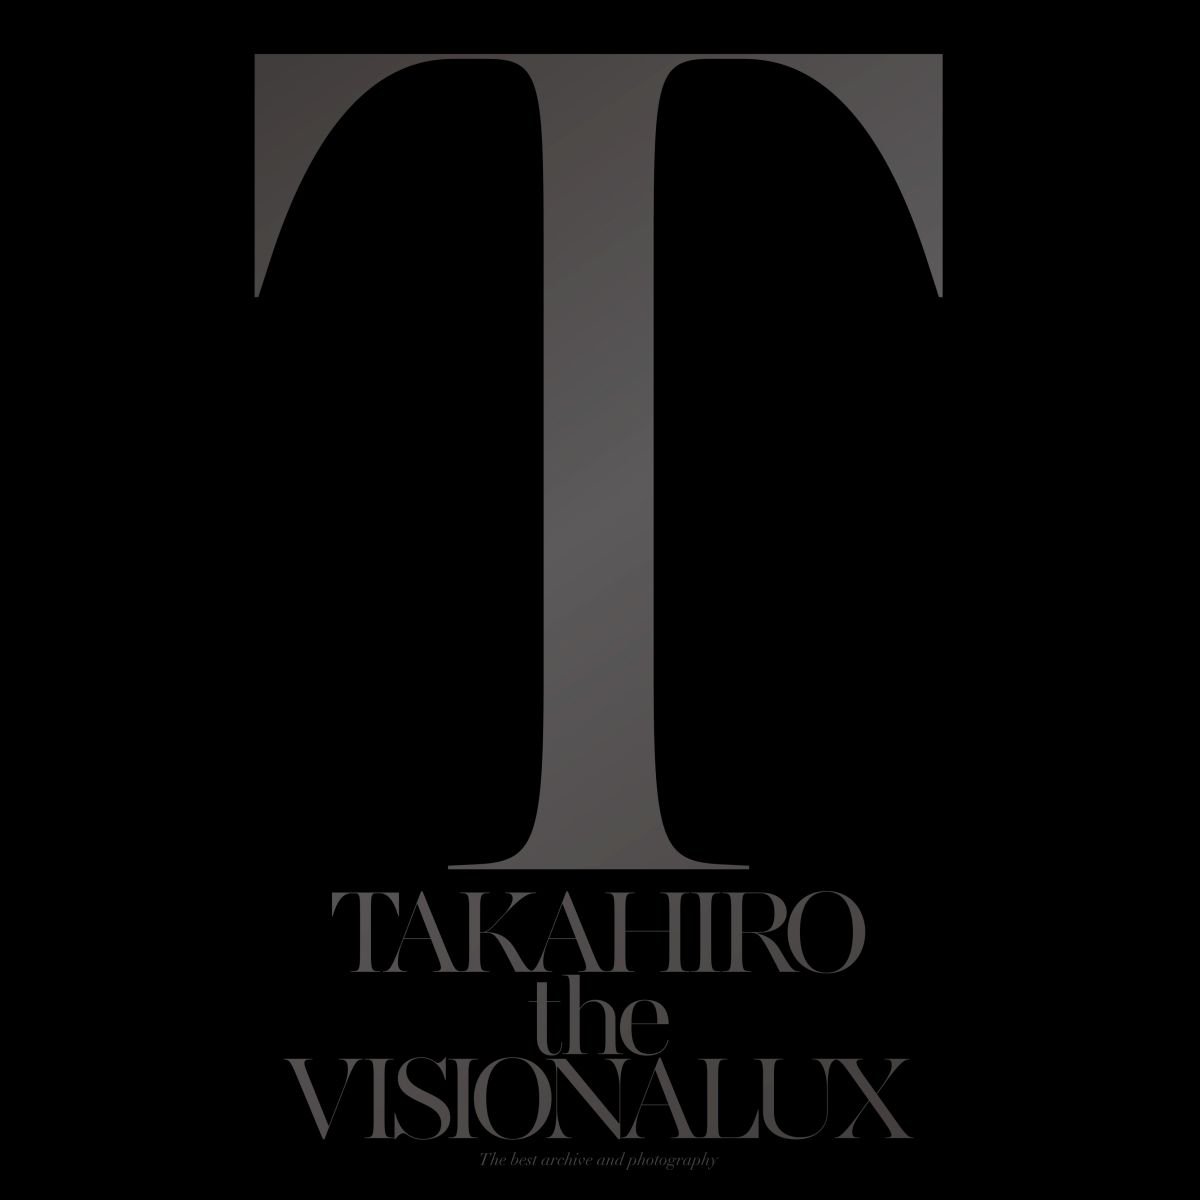 楽天ブックス The Visionalux Cd Dvd Exile Takahiro Cd